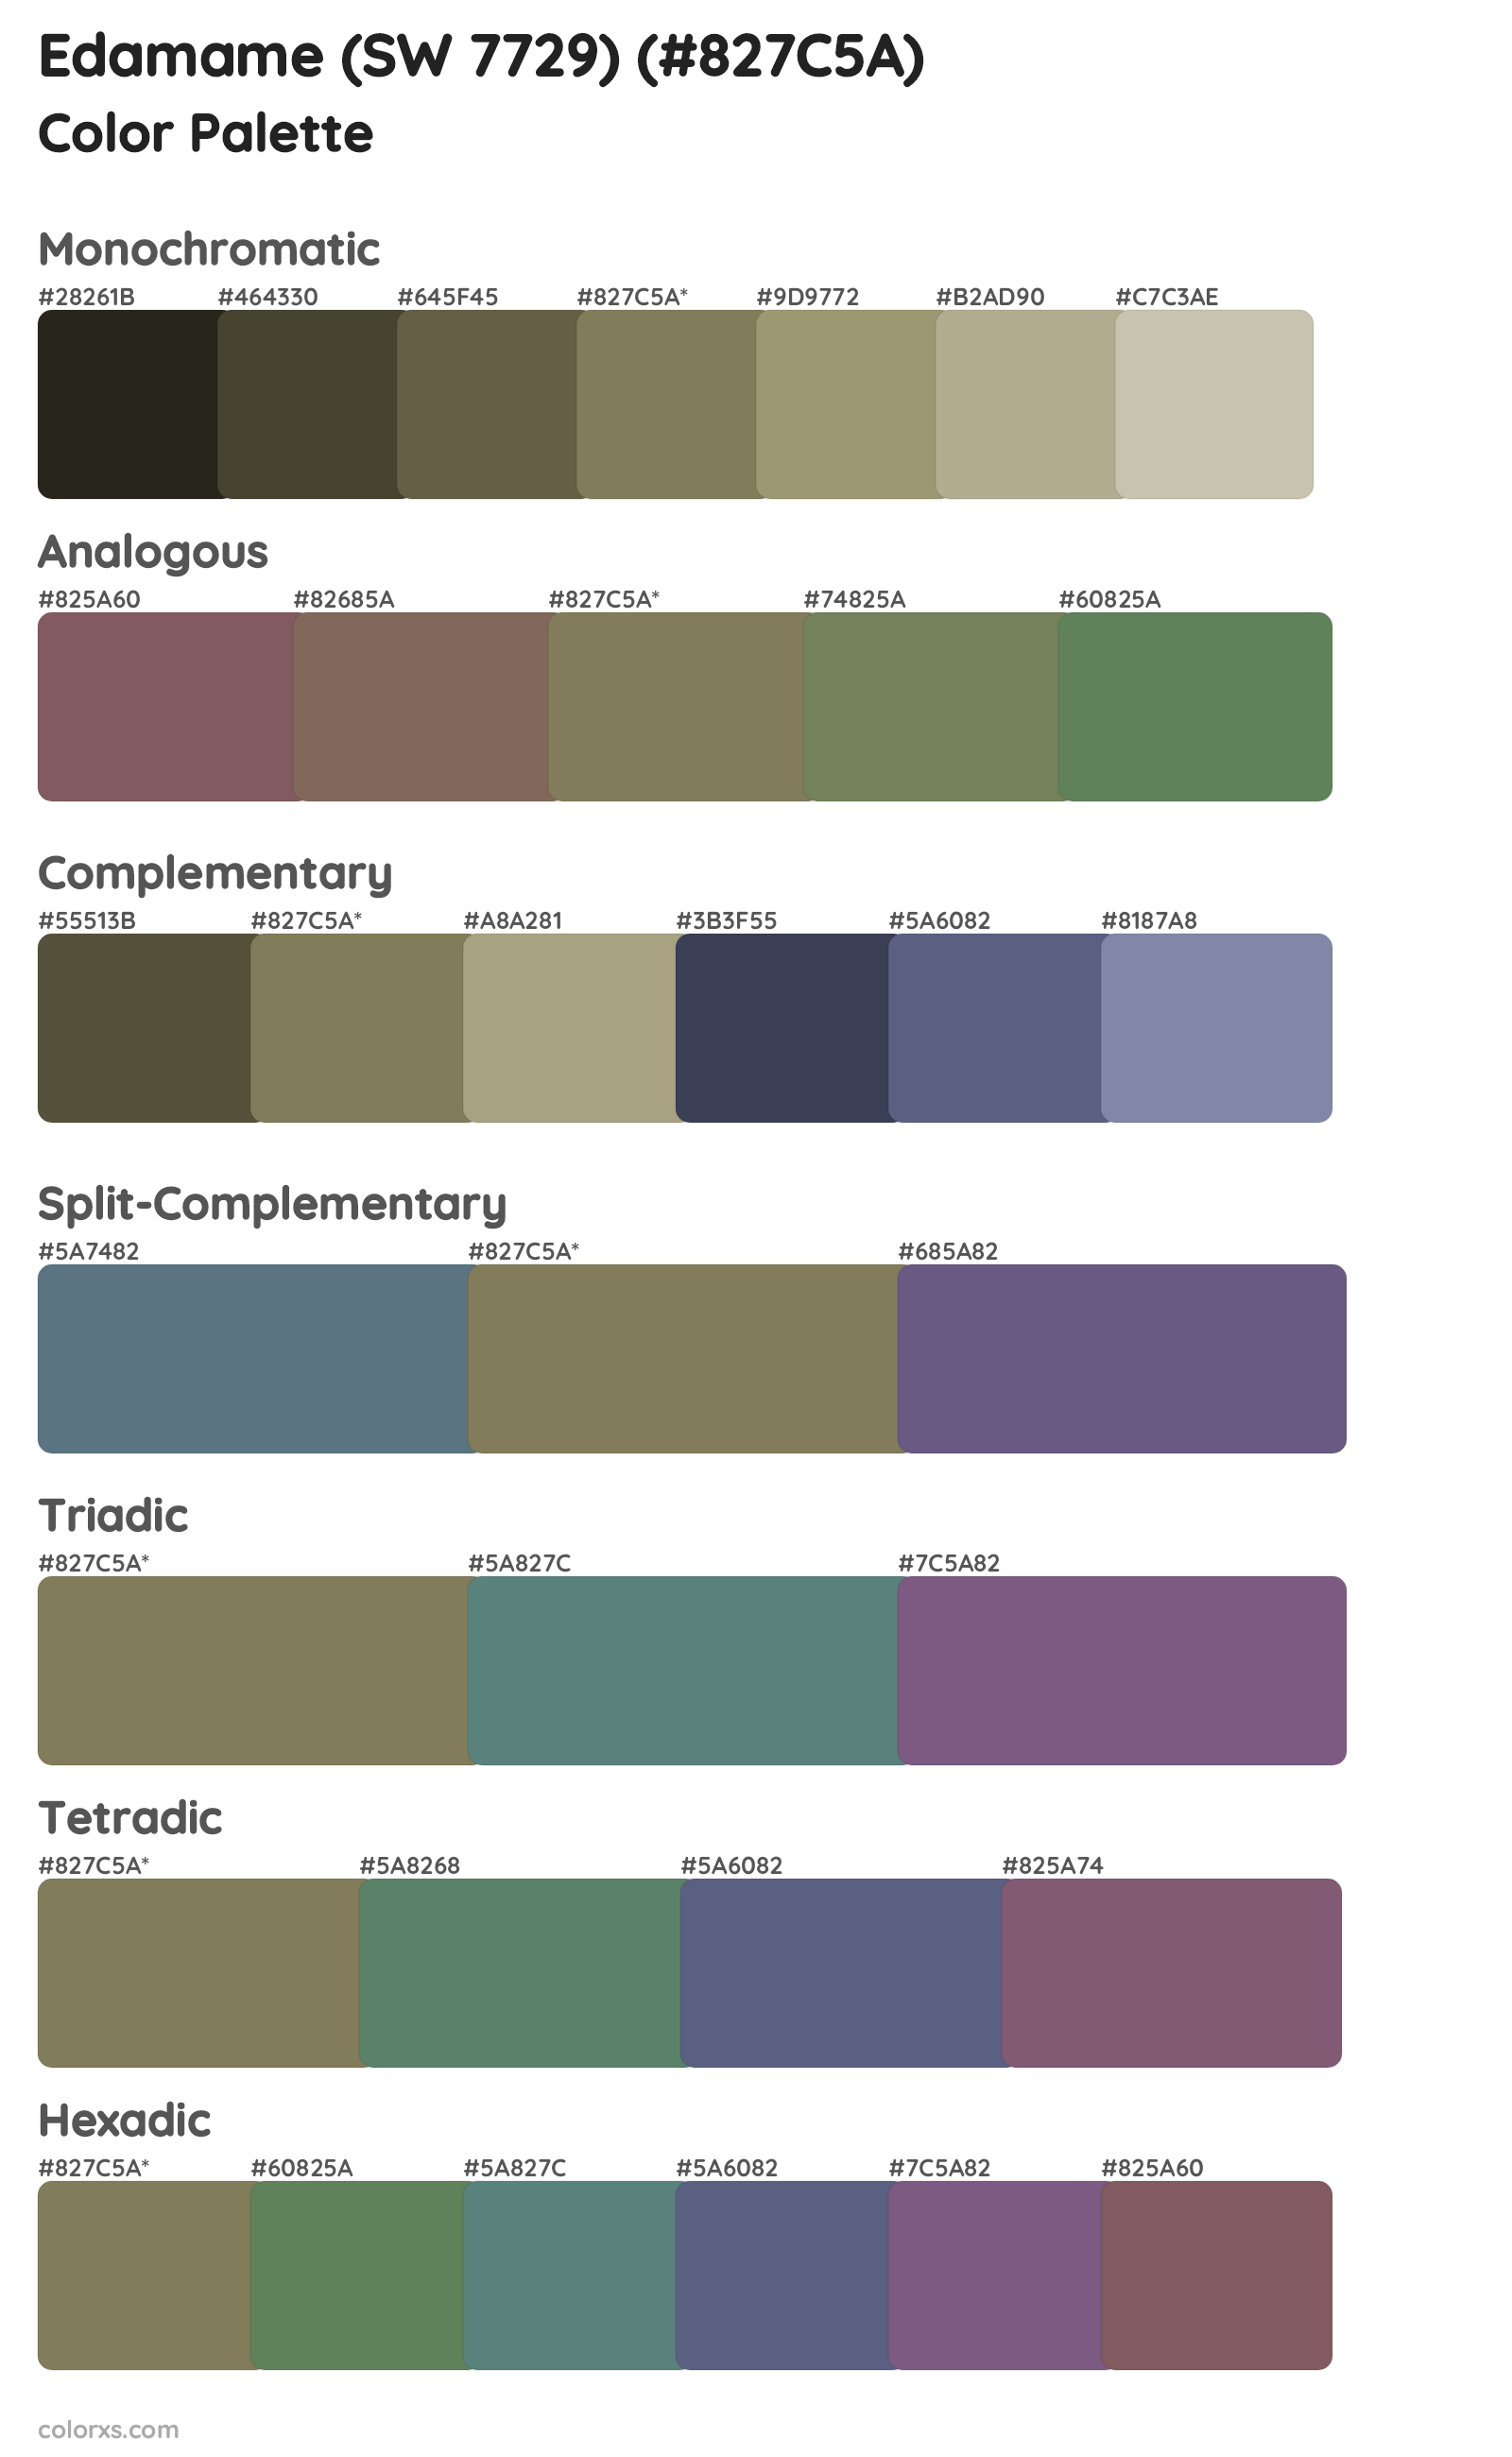 Edamame (SW 7729) Color Scheme Palettes